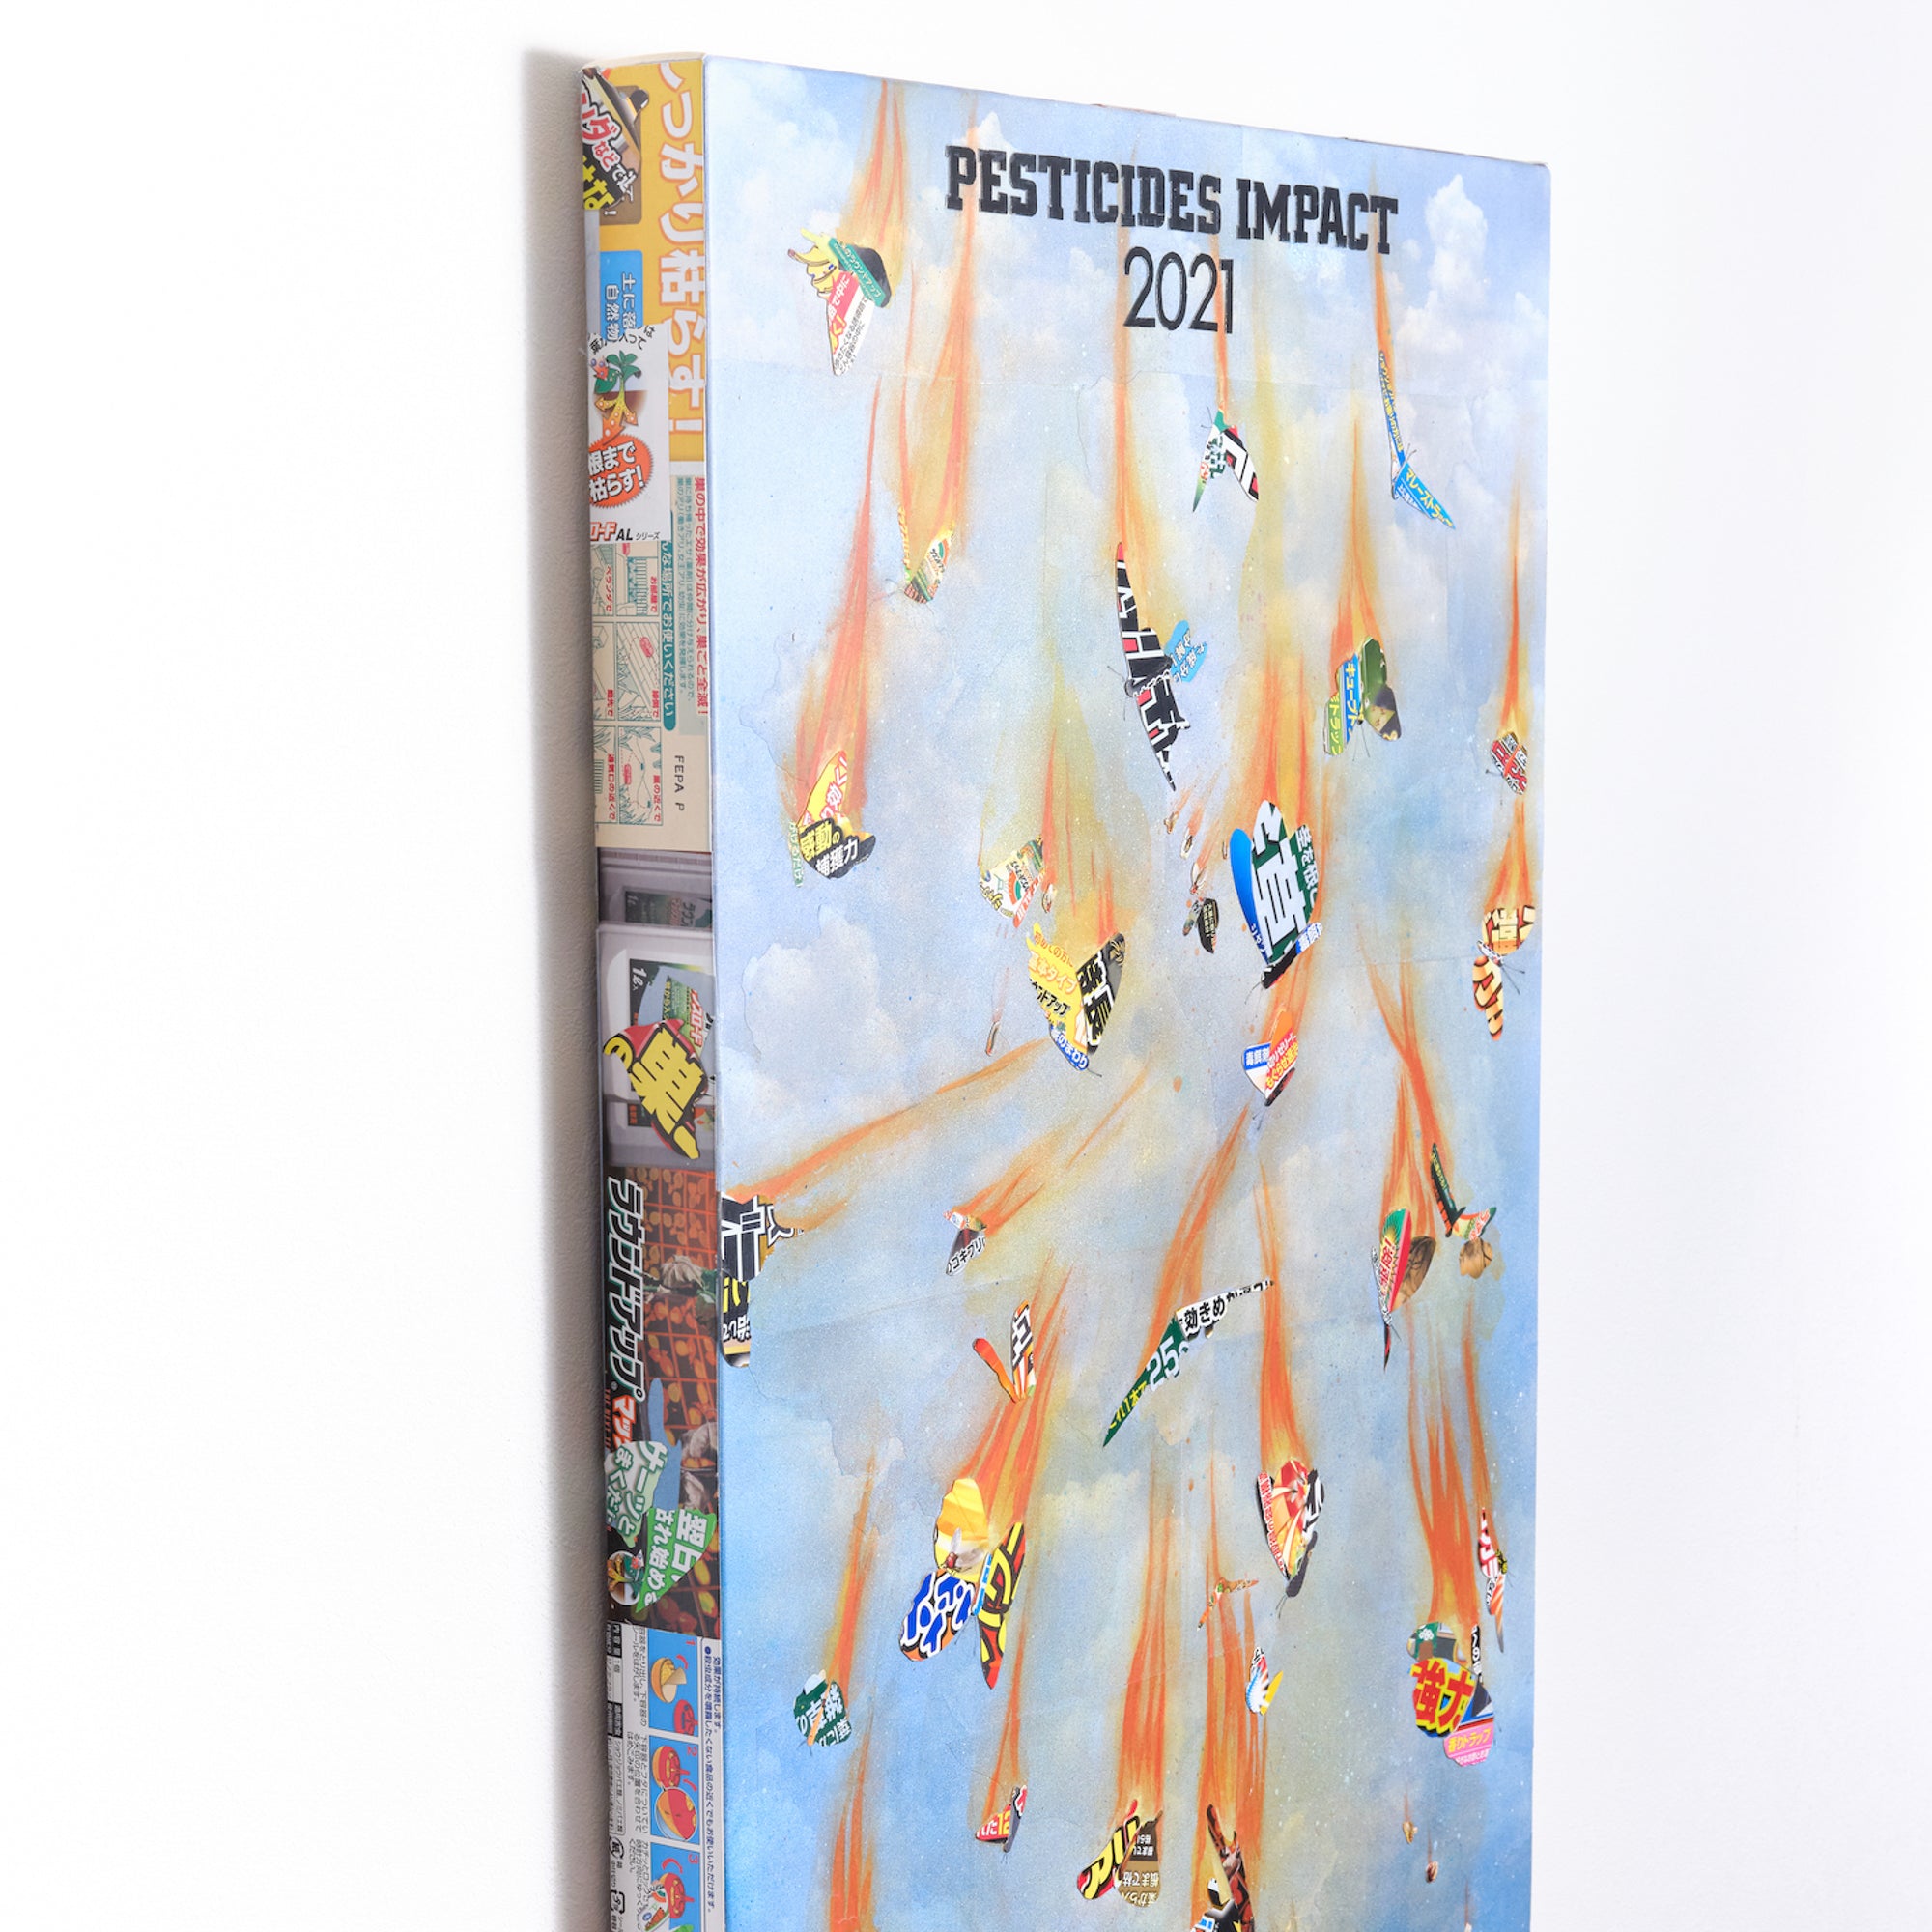 "PESTICIDES IMPACT" by Yoh Nagao (Original Artwork)